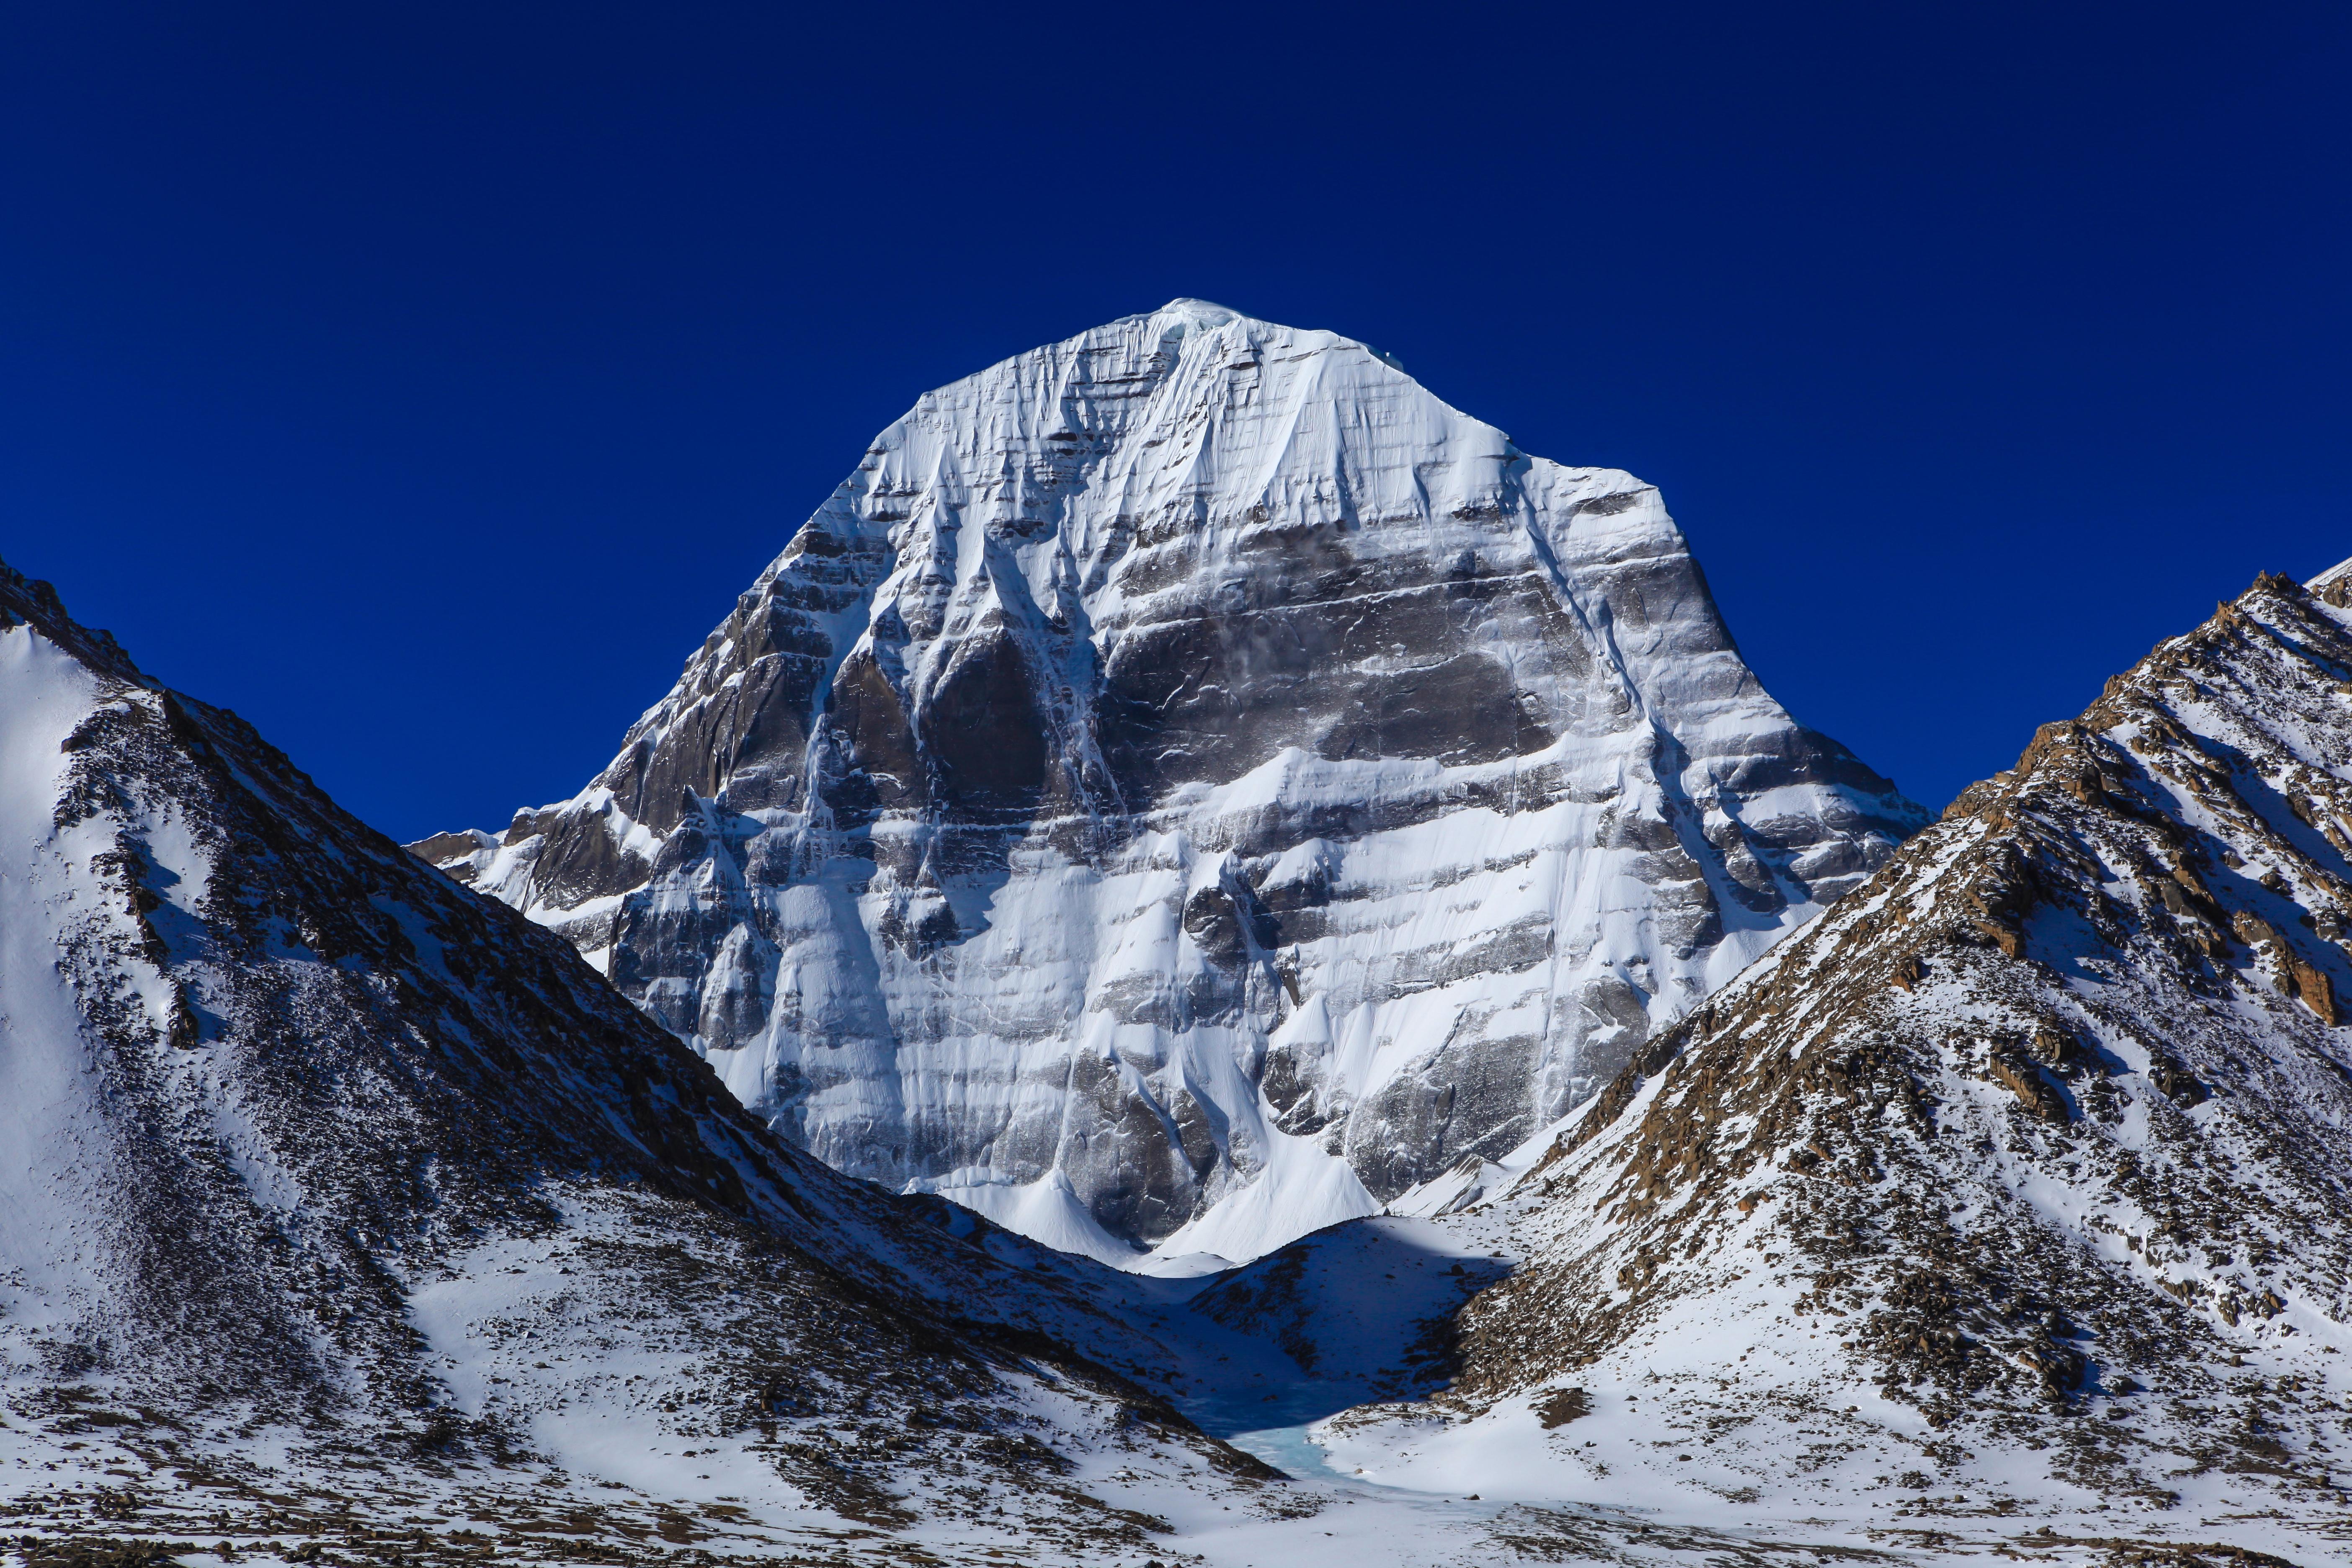 May 2019 Tibet Mt Kailash Trek Kailash Free